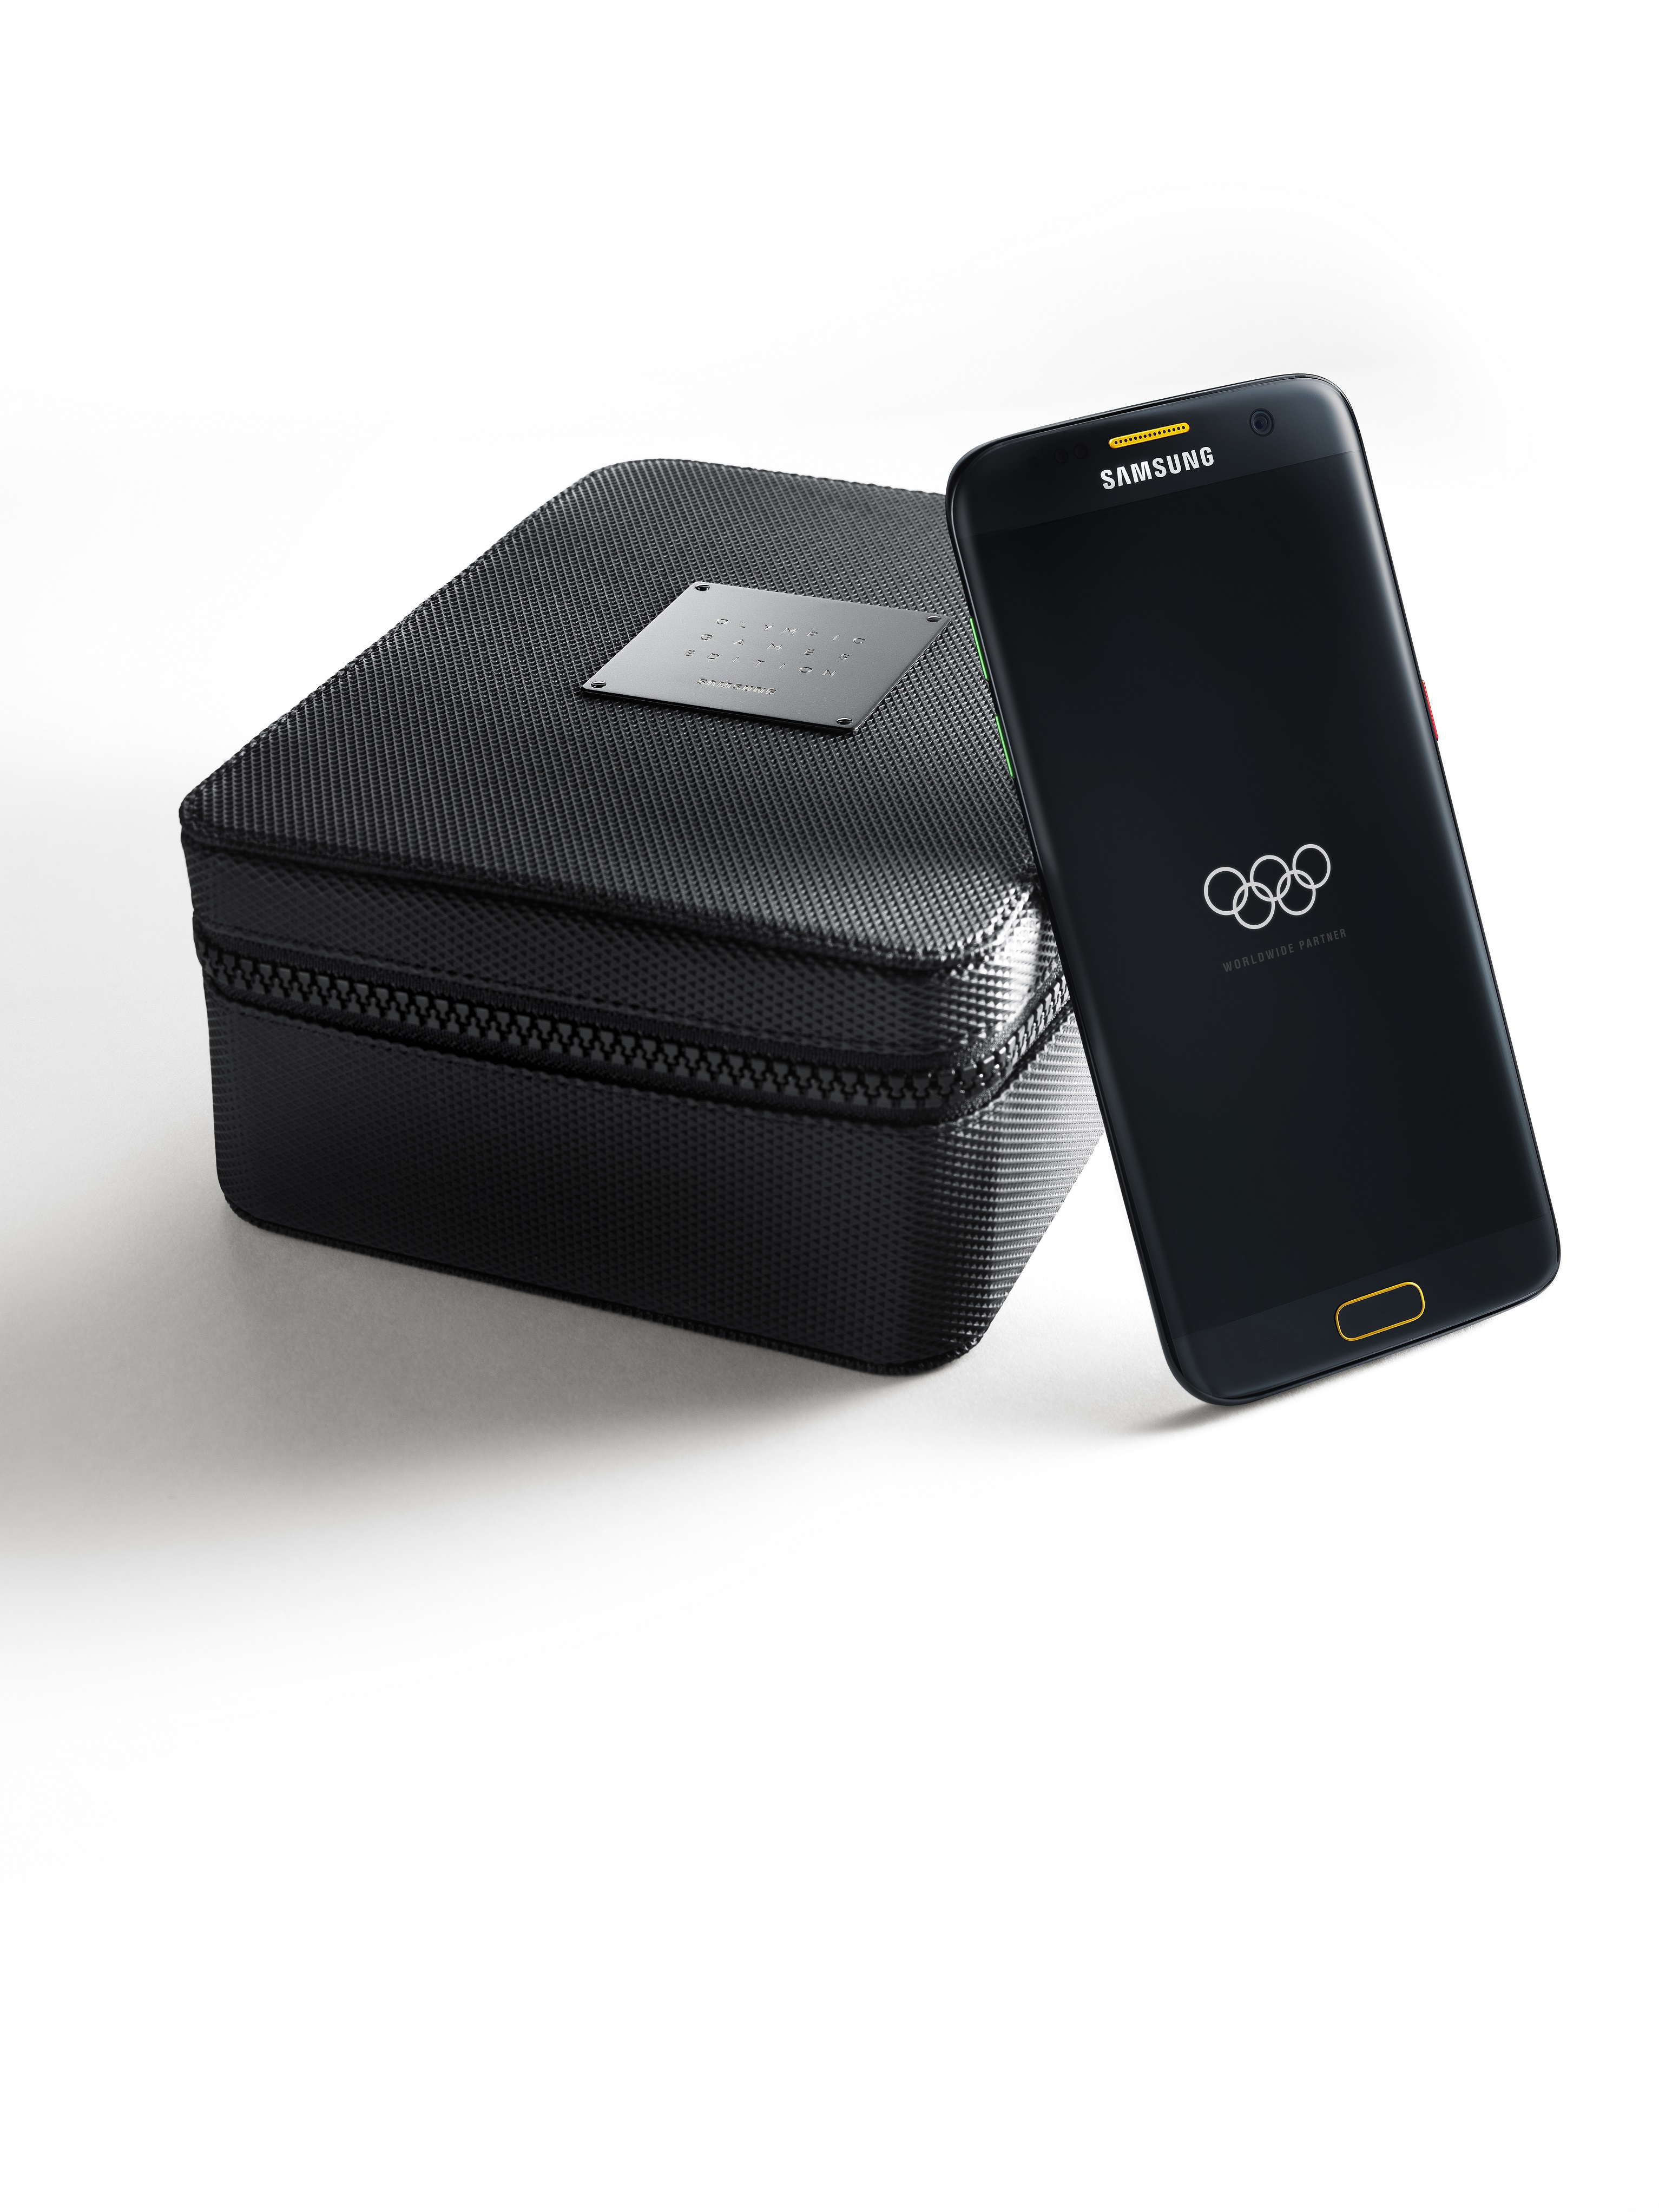 Samsung anuncia Galaxy S7 edge Edi눯o Limitada Jogos Olimpicos com o lan놹mento da Campanha Global dos Jogos Olimpicos Rio 2016